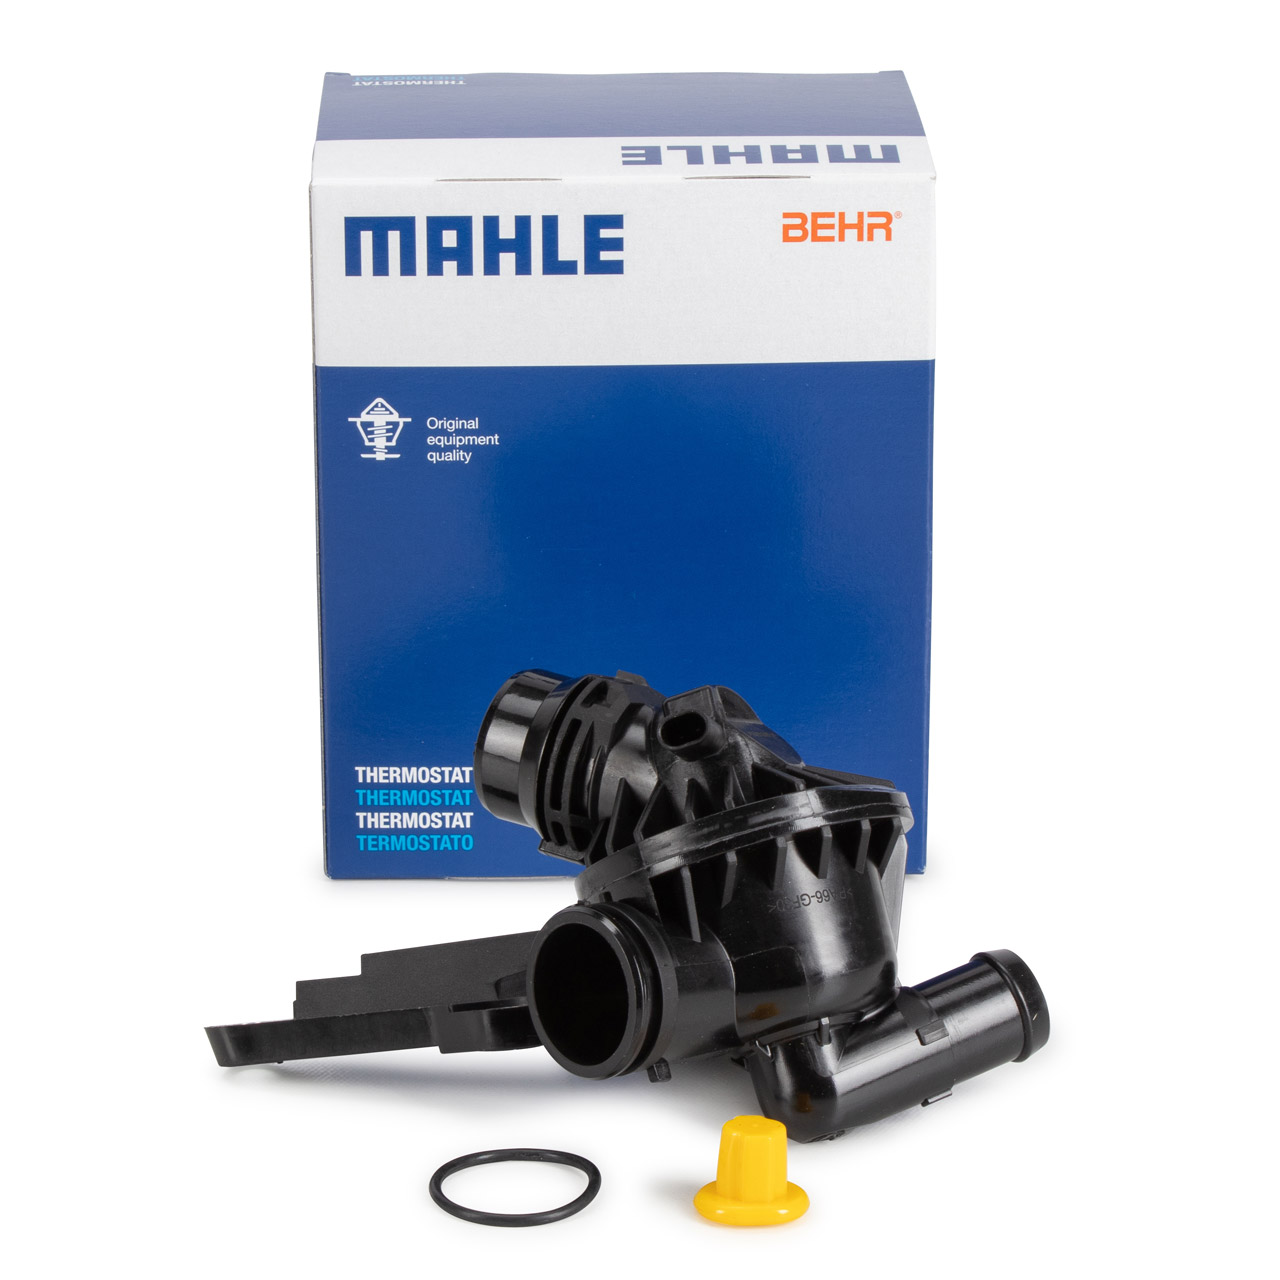 MAHLE / BEHR TM61105 Thermostat + Gehäuse BMW 1er F20 F21 114-120i 3er F30 F31 316i N13